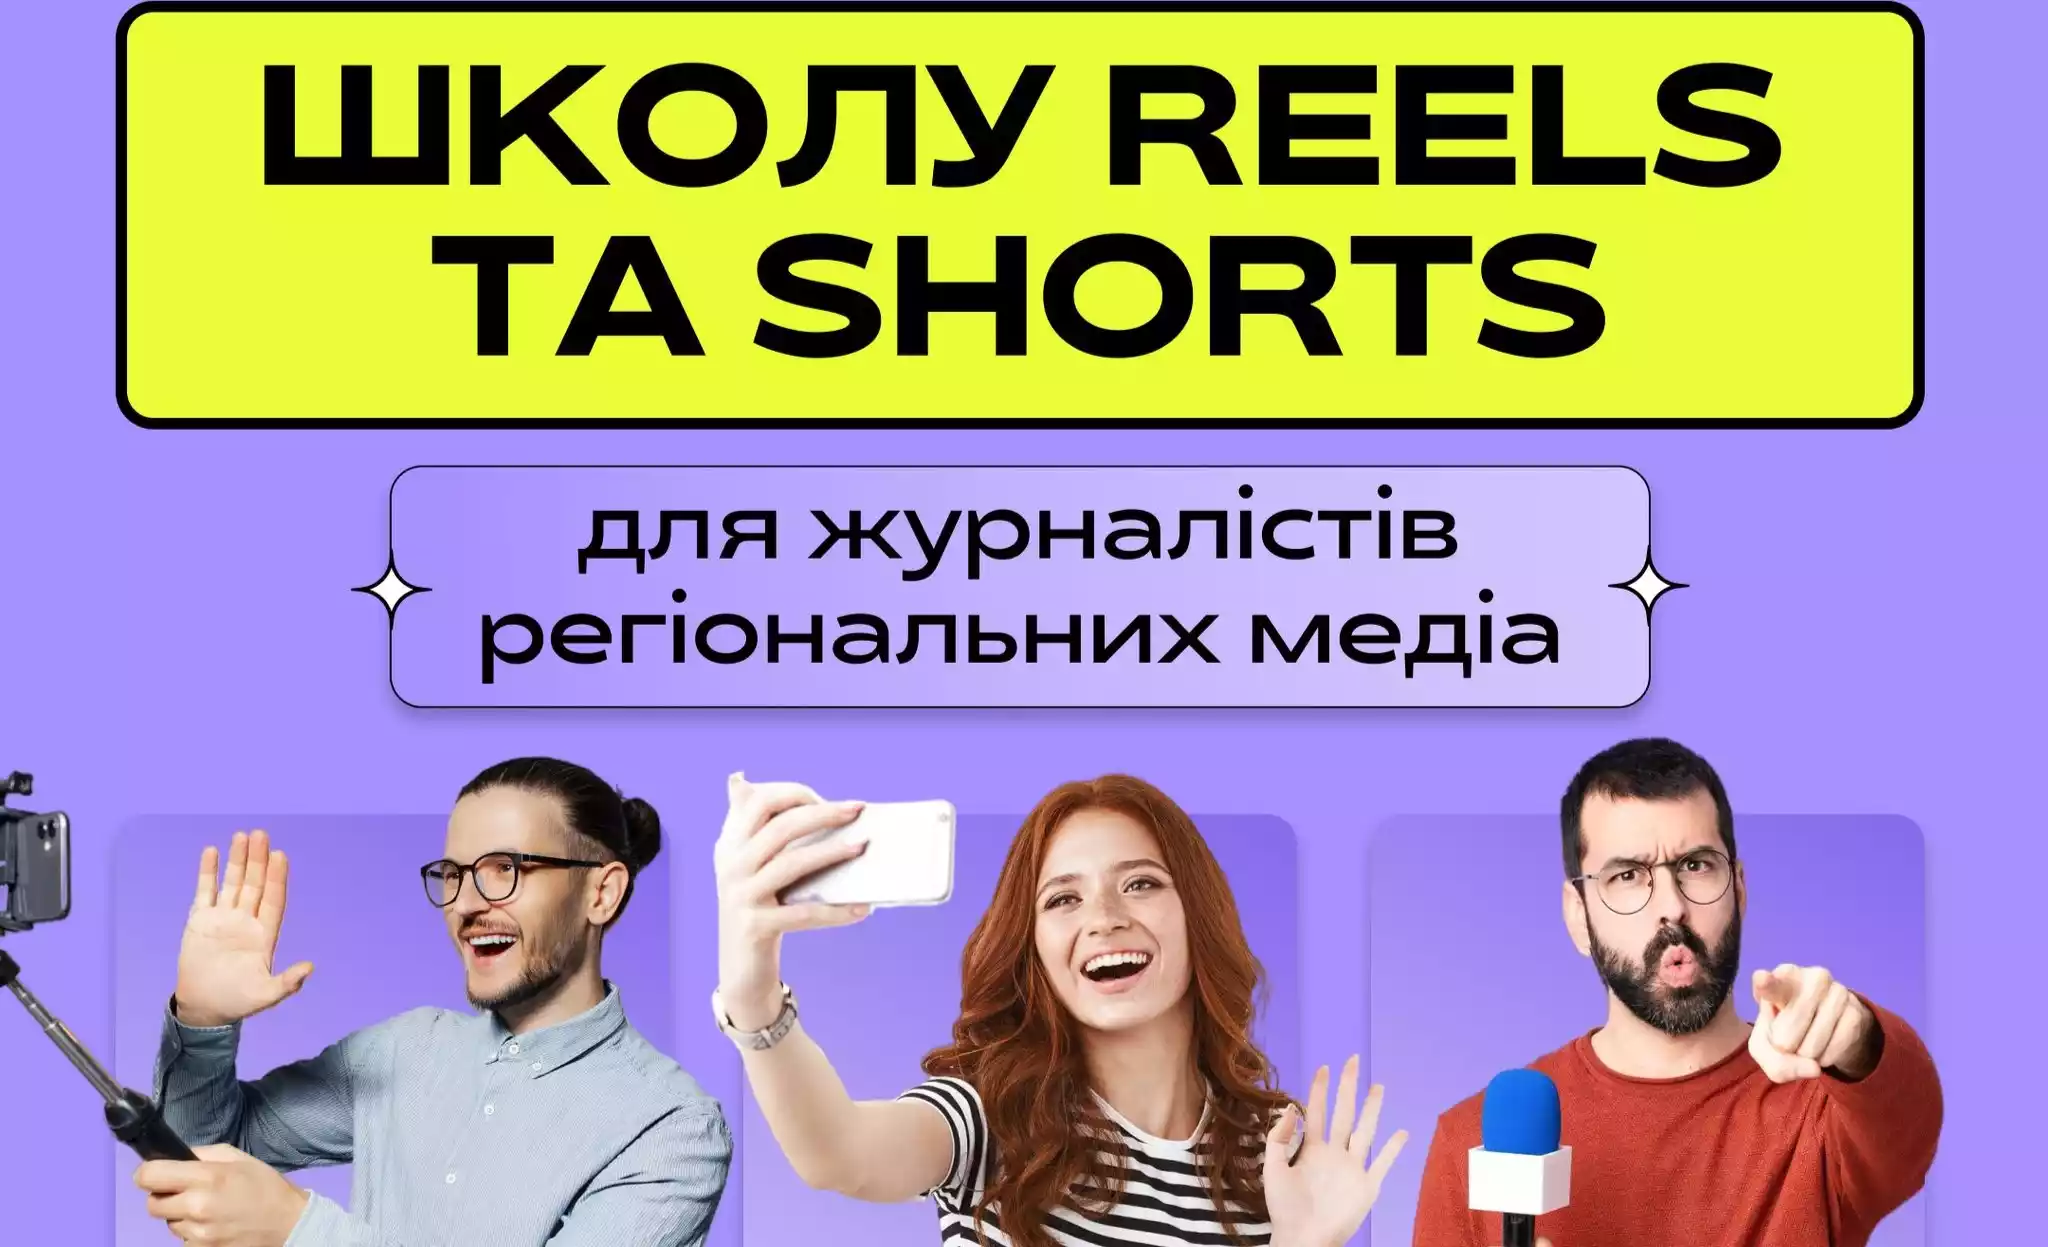 Агенція «Або» відкриває Школу коротких відеоформатів Reels та Shorts для медіа